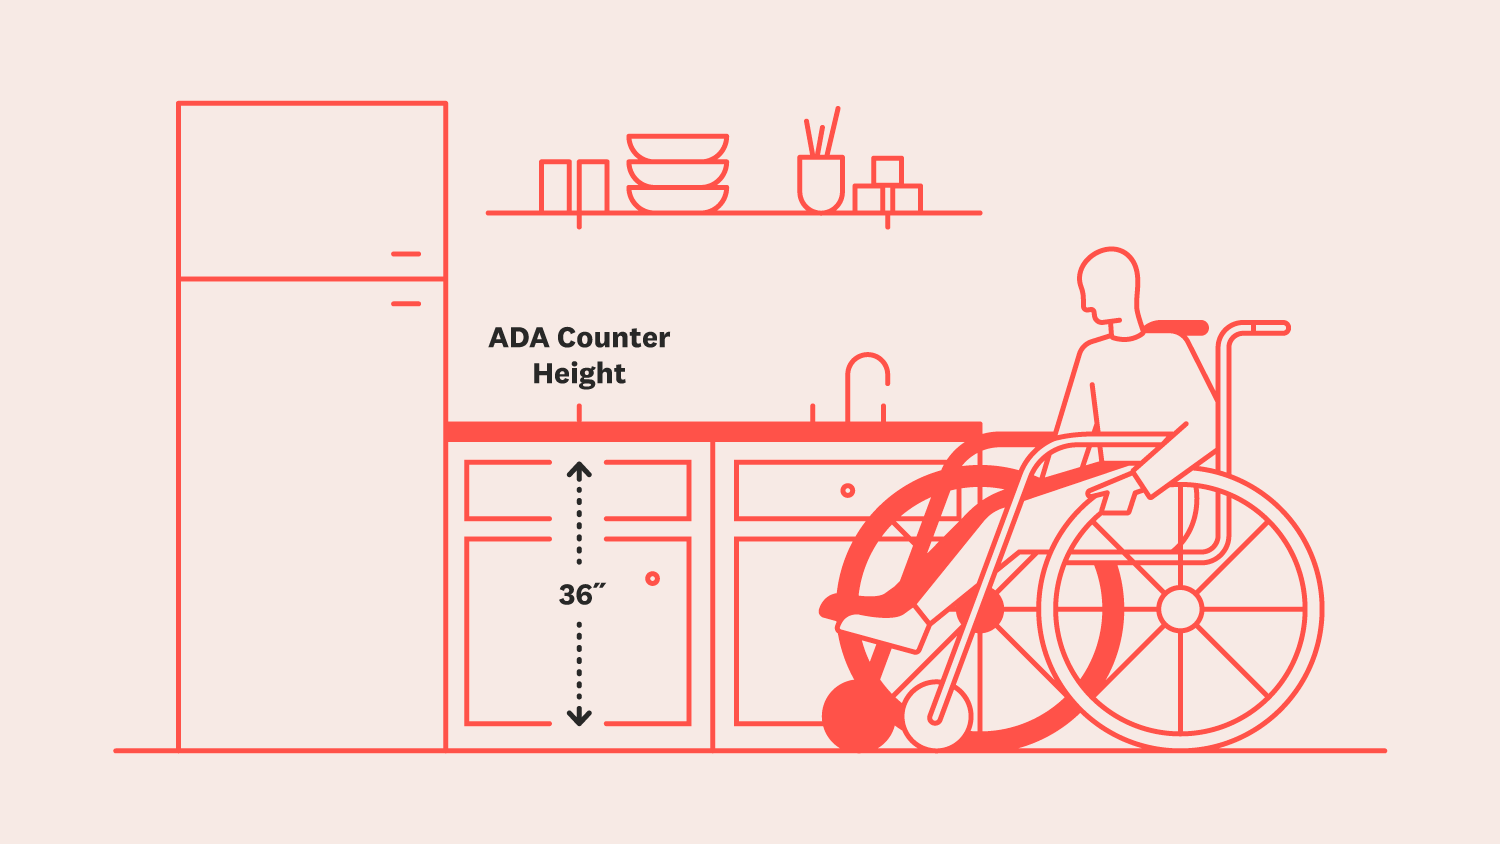 whellchair accesible kitchen sink height